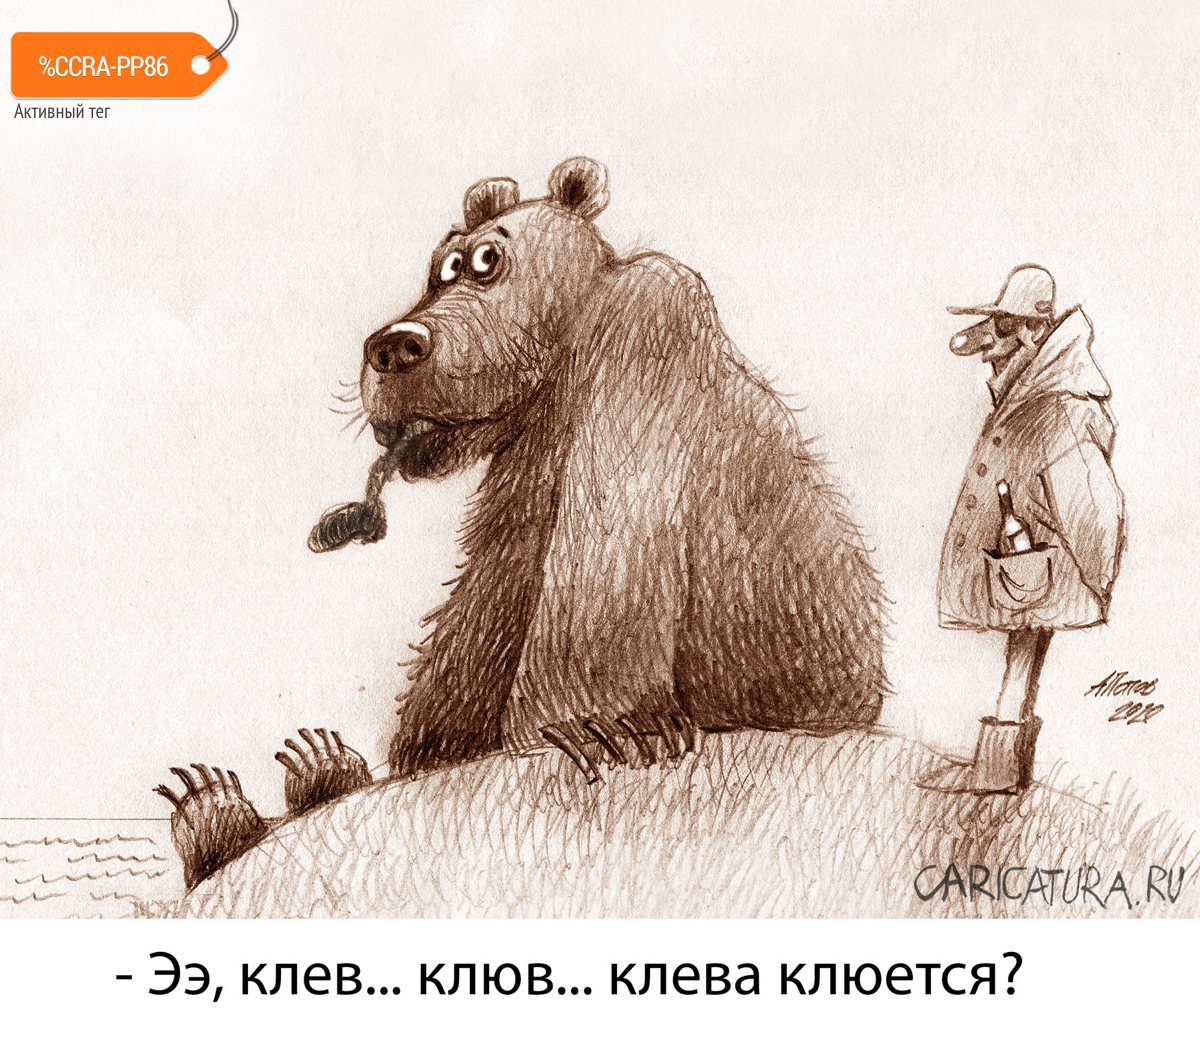 Карикатура "Рыбак рыбака...", Александр Попов